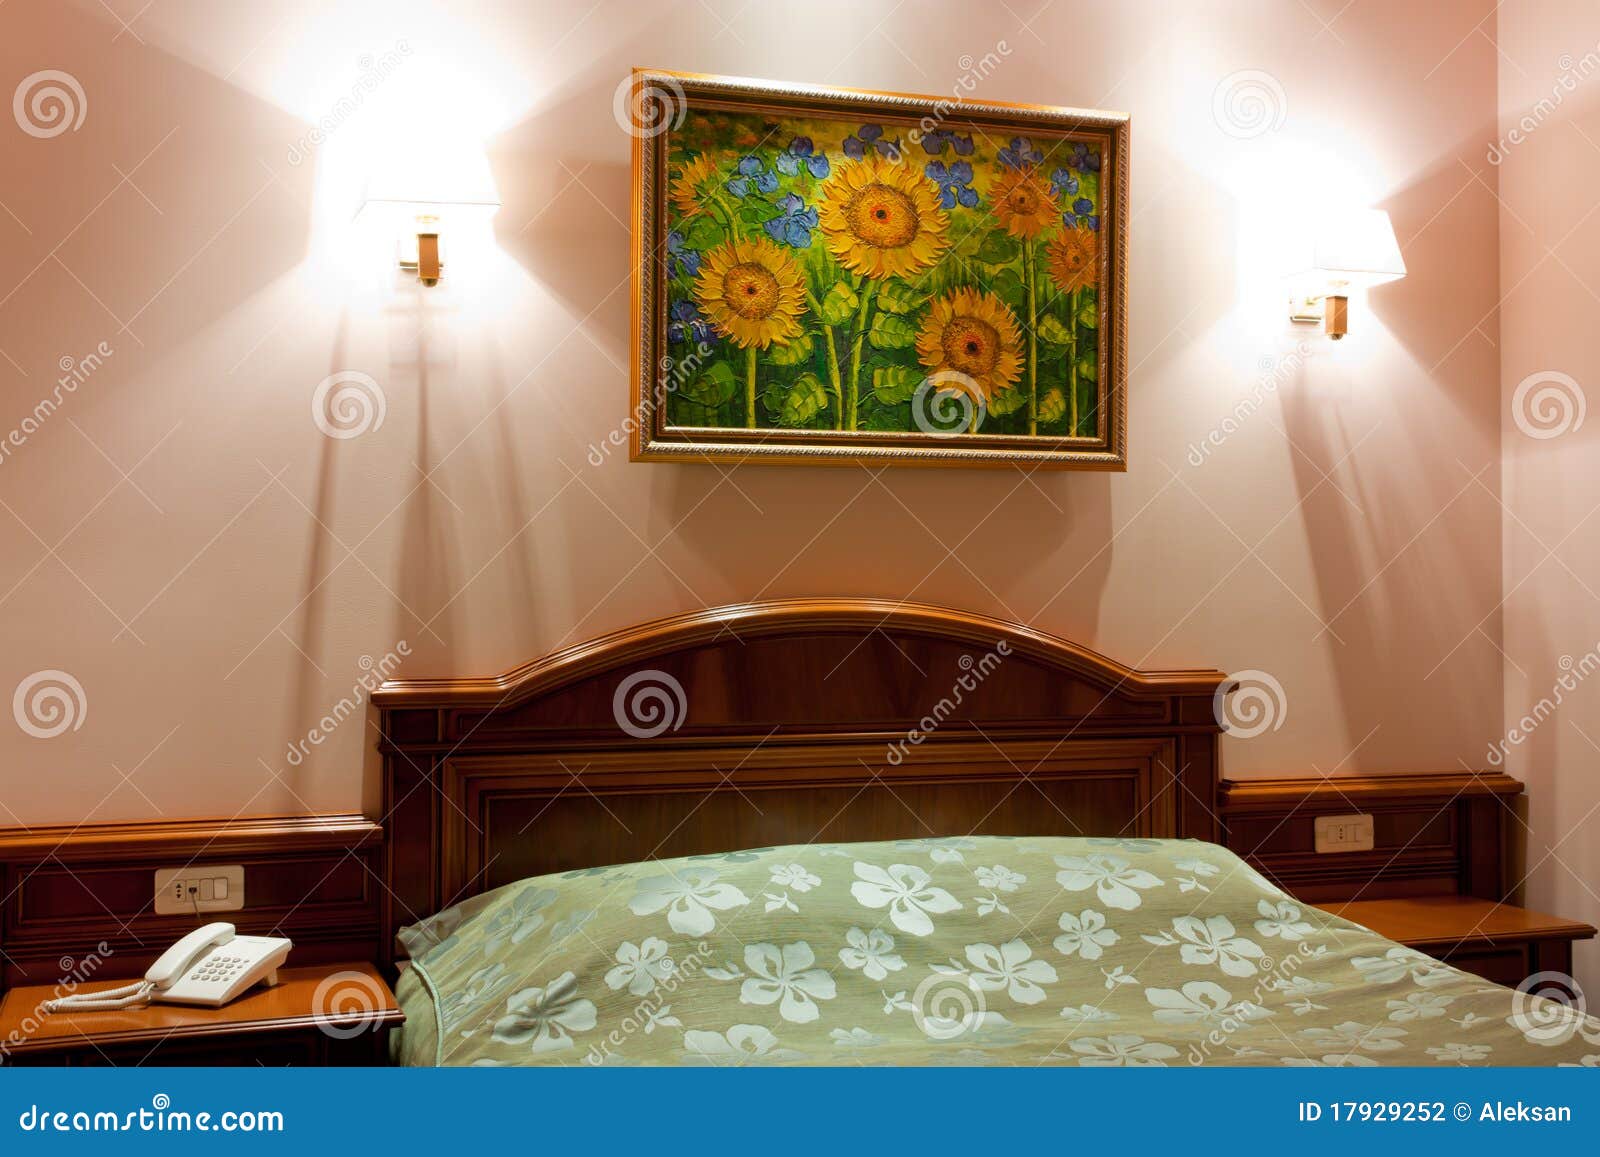 Photo of bedroom in hotel